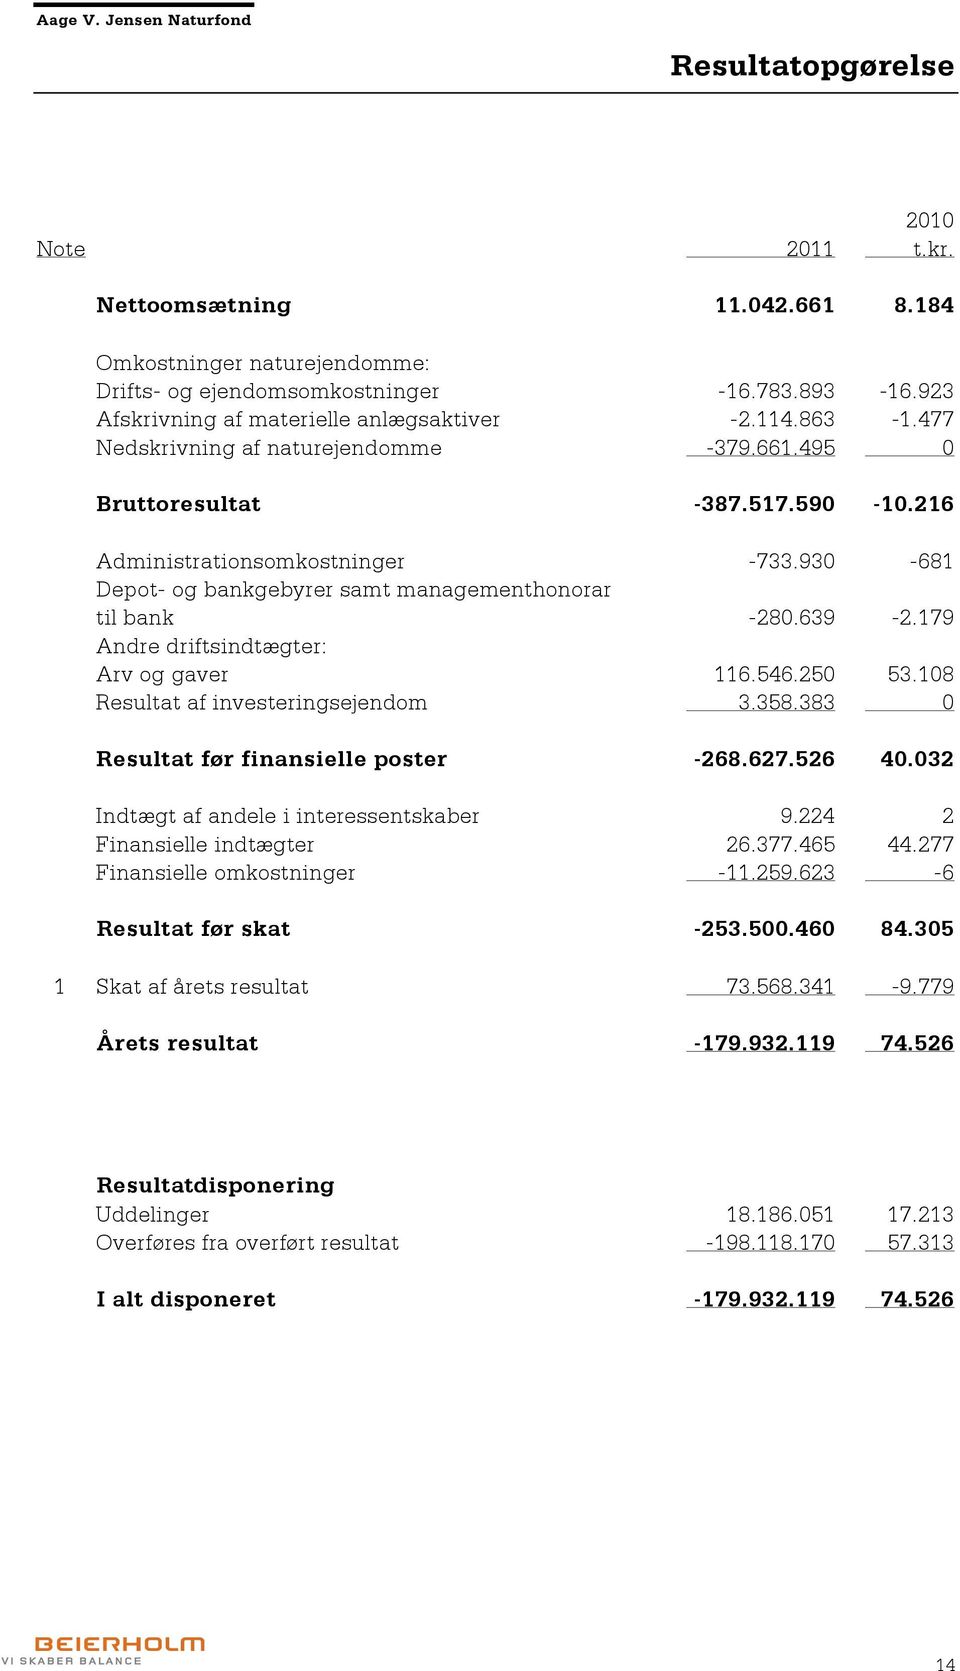 179 Andre driftsindtægter: Arv og gaver 116.546.250 53.108 Resultat af investeringsejendom 3.358.383 0 Resultat før finansielle poster -268.627.526 40.032 Indtægt af andele i interessentskaber 9.